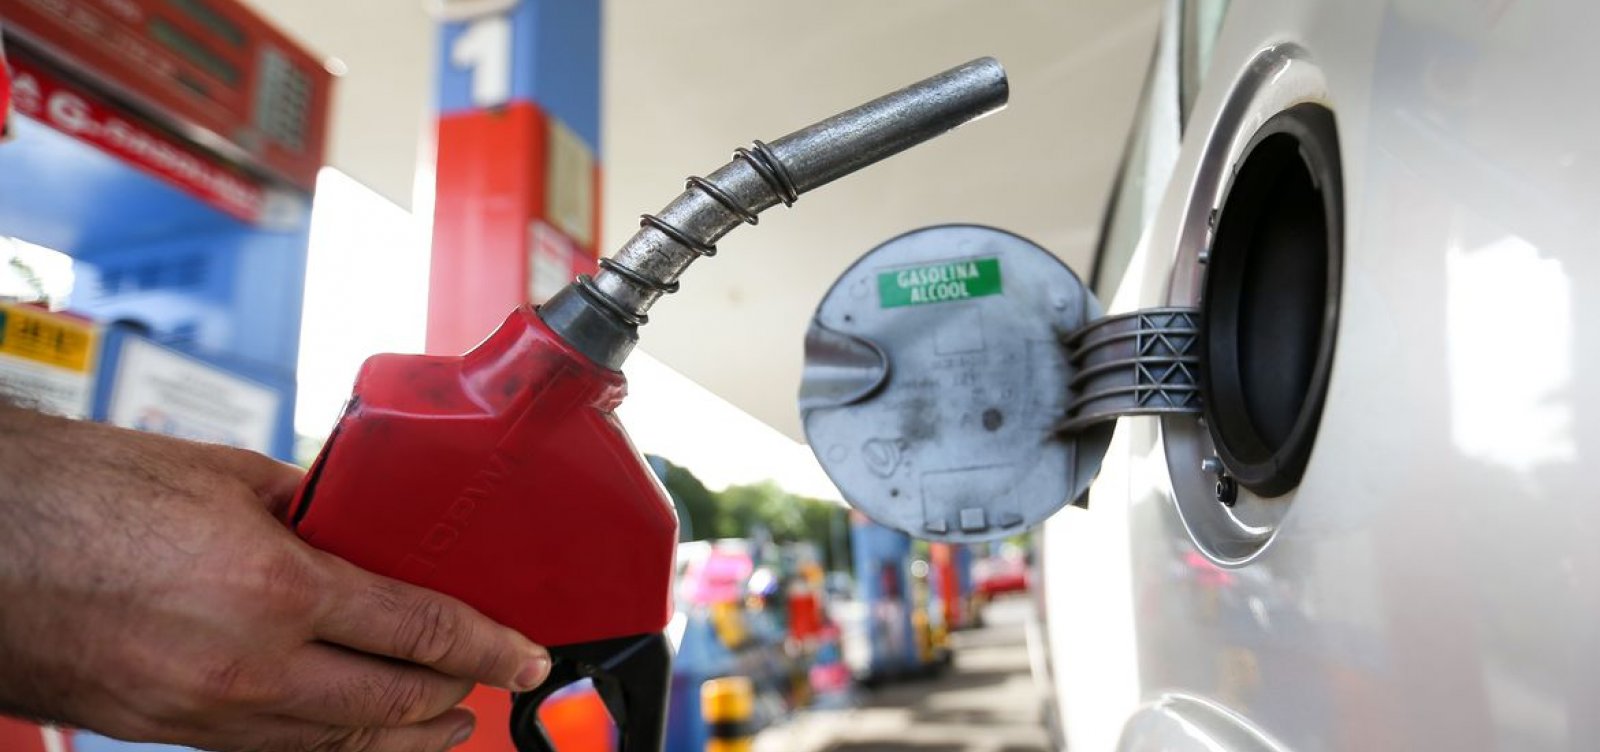 Acelen anuncia redução no preço dos combustíveis na Bahia